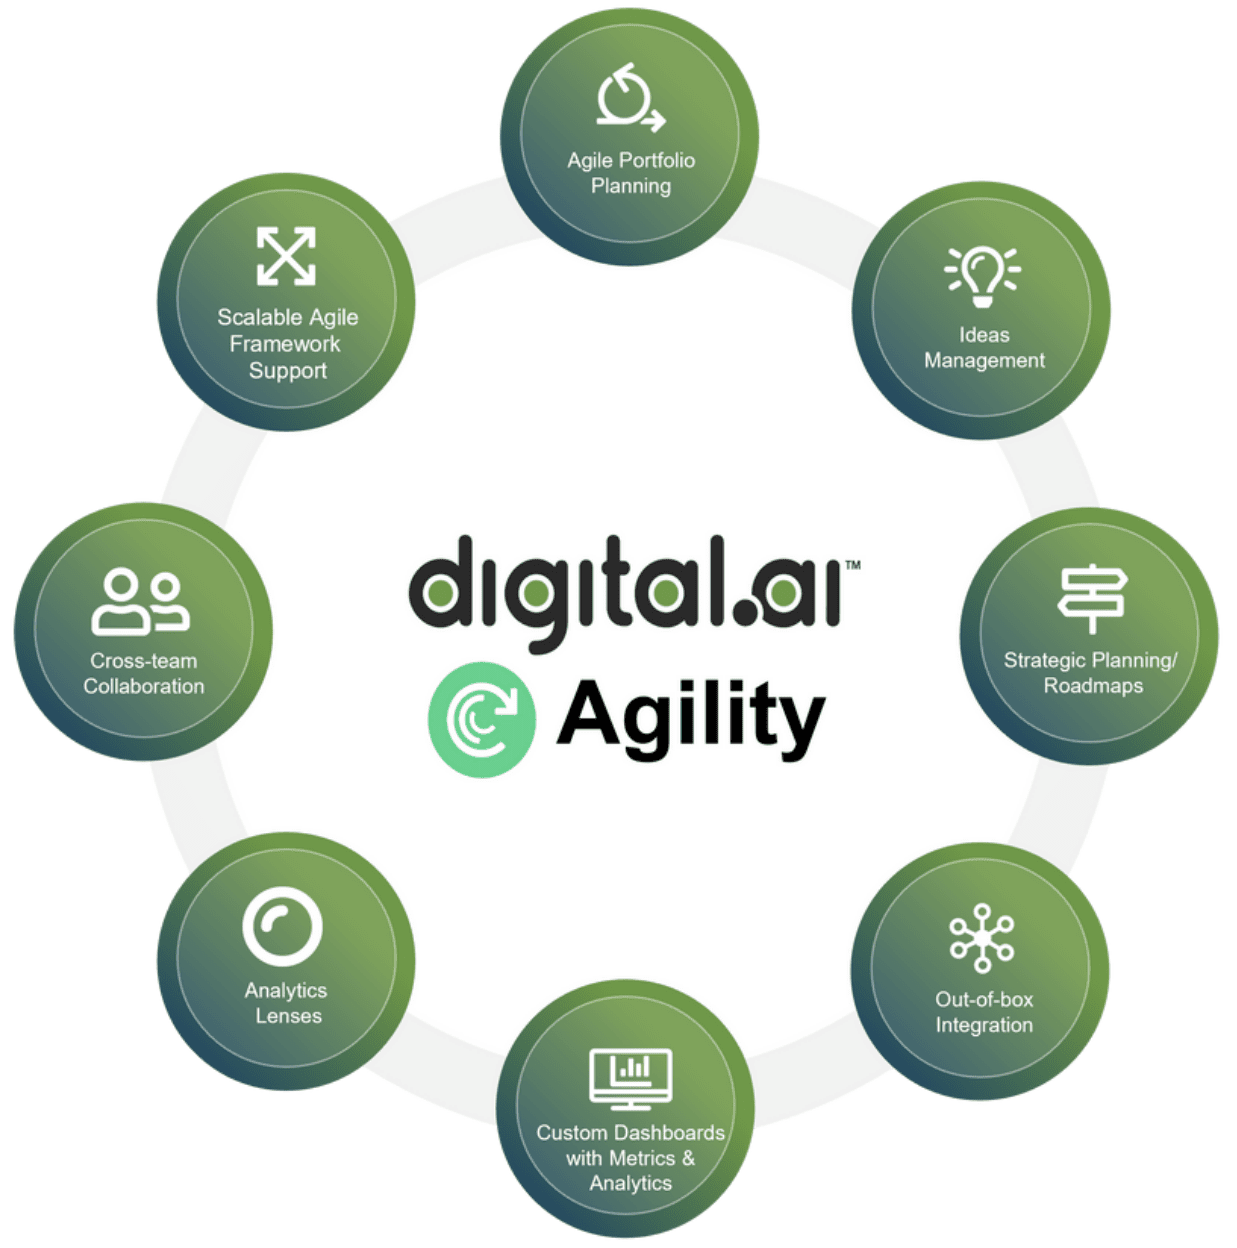 Digital.ai Agility Solution